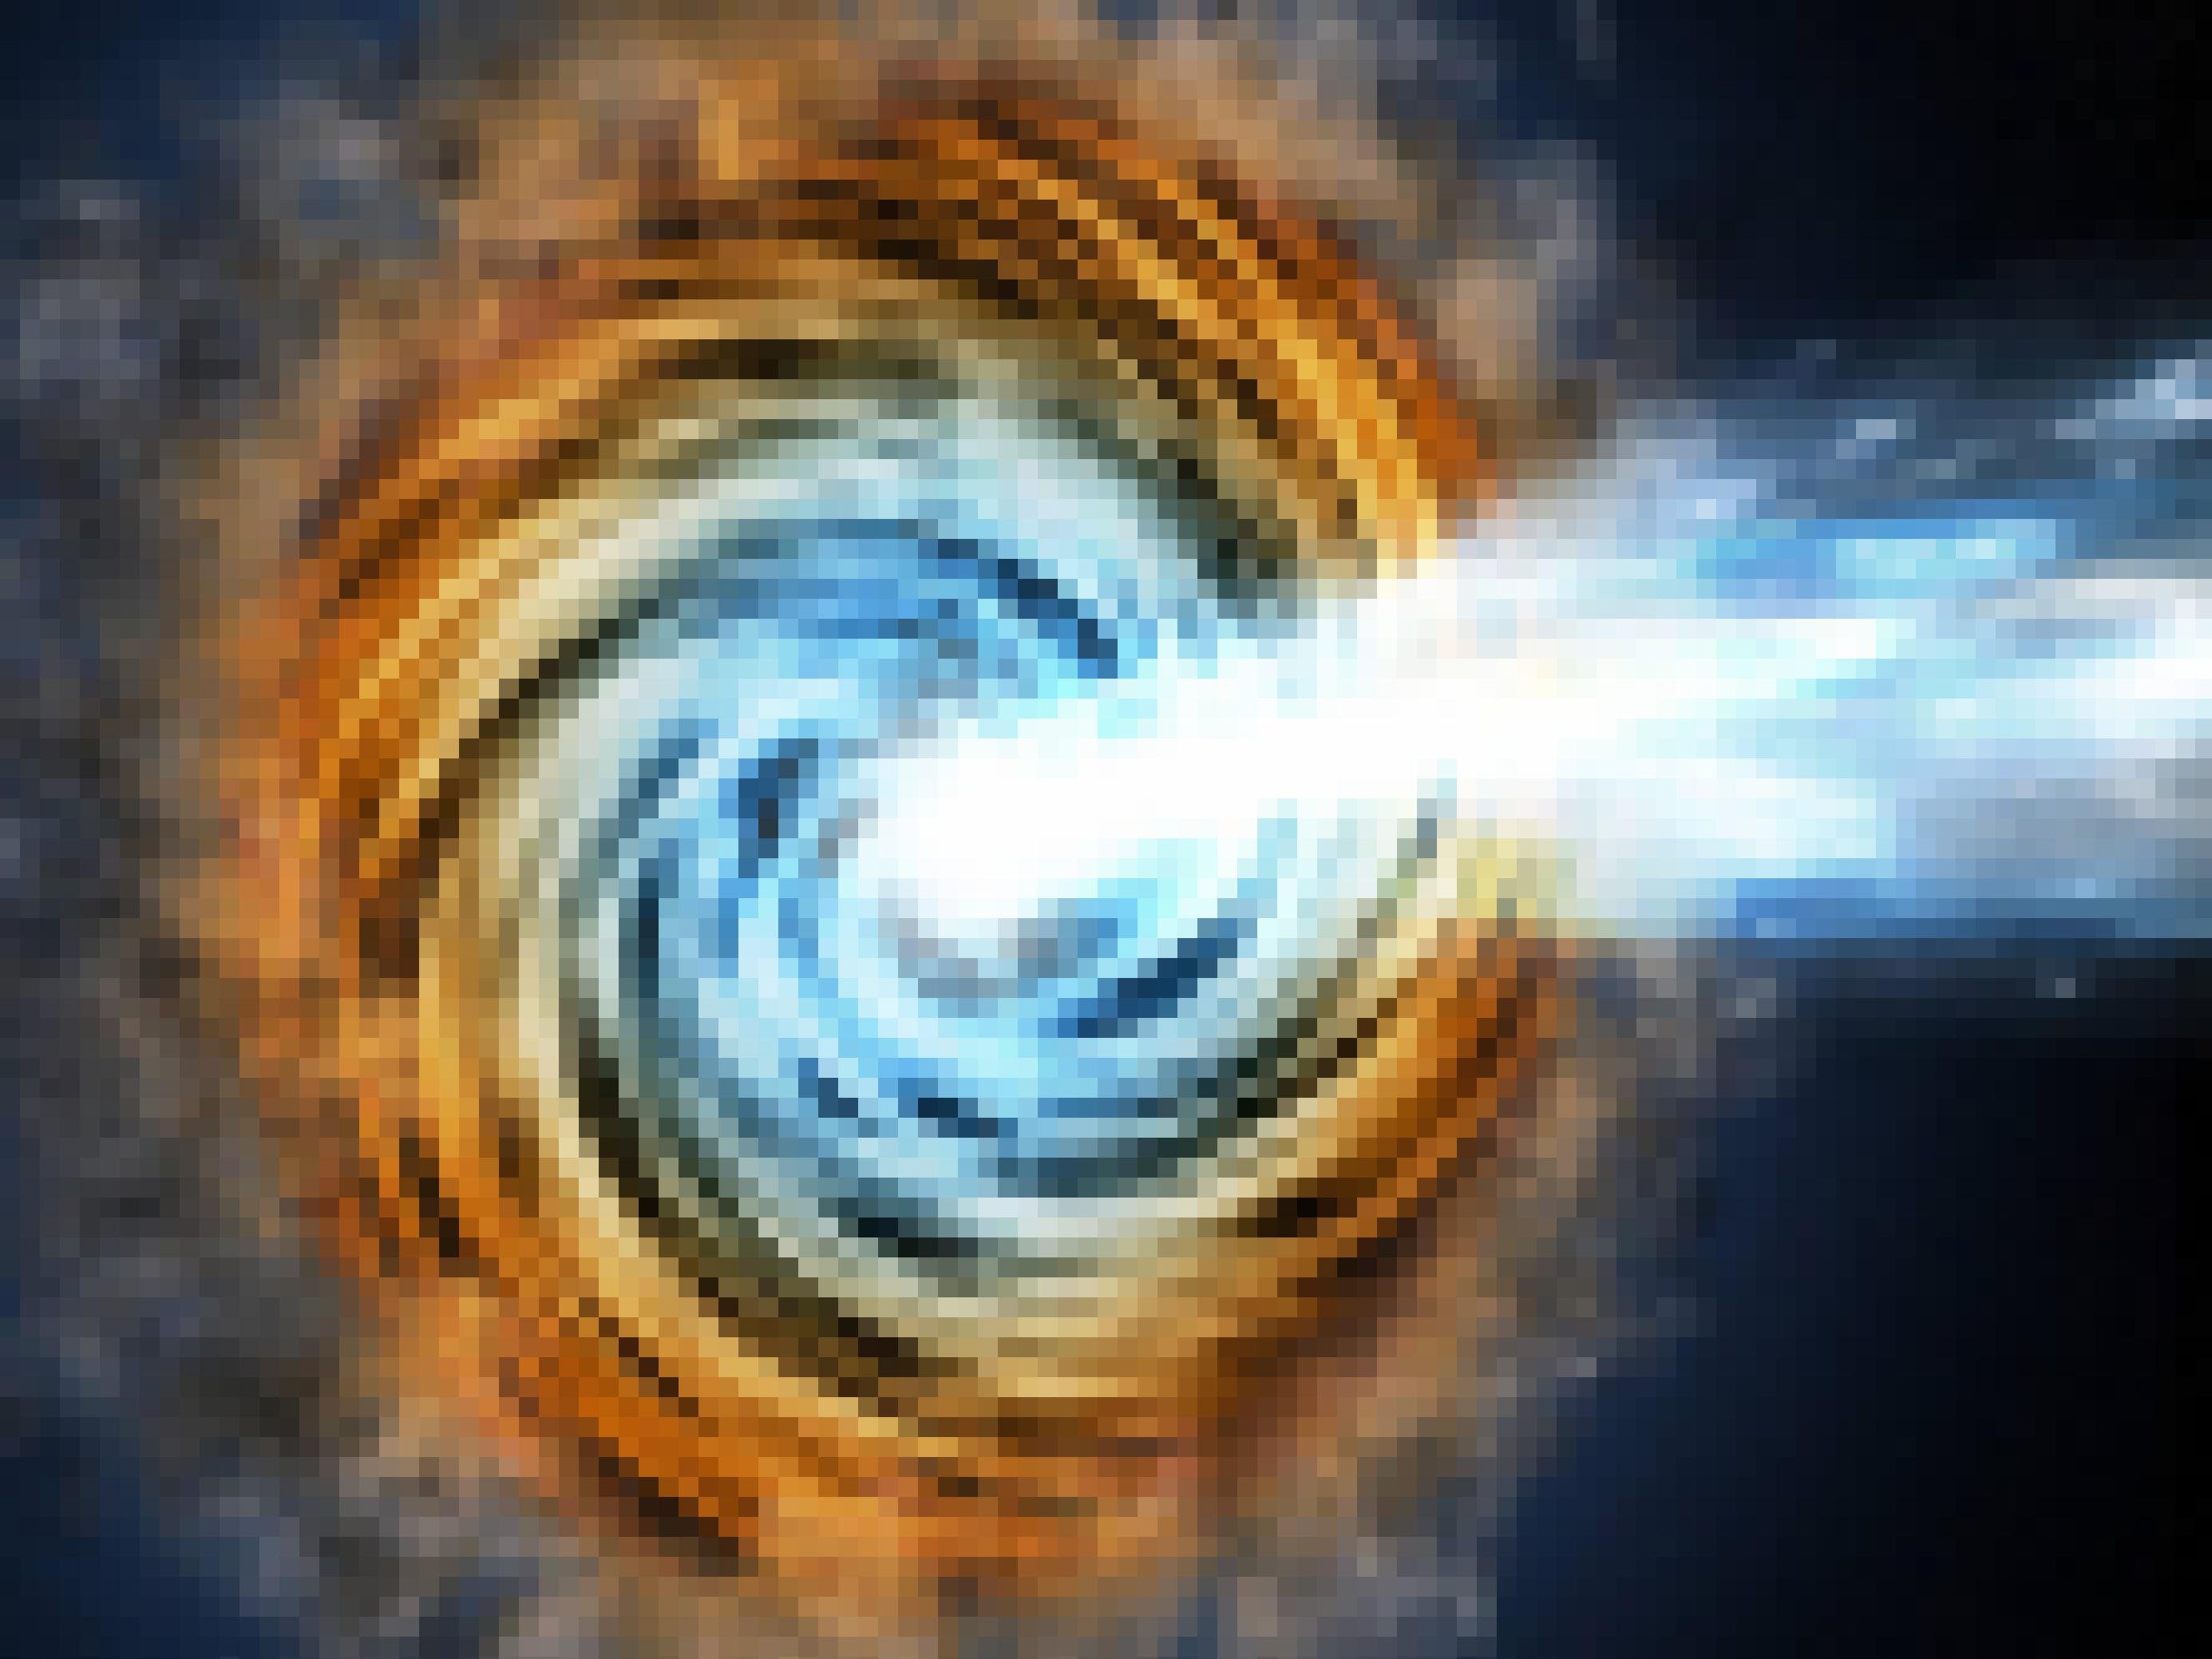 Illustration eines „Blazars“ – eines aktiven supermassiven Schwarzen Loches, dessen Strahlen in Richtung Erde leuchten und der deshalb besonders hell erscheint